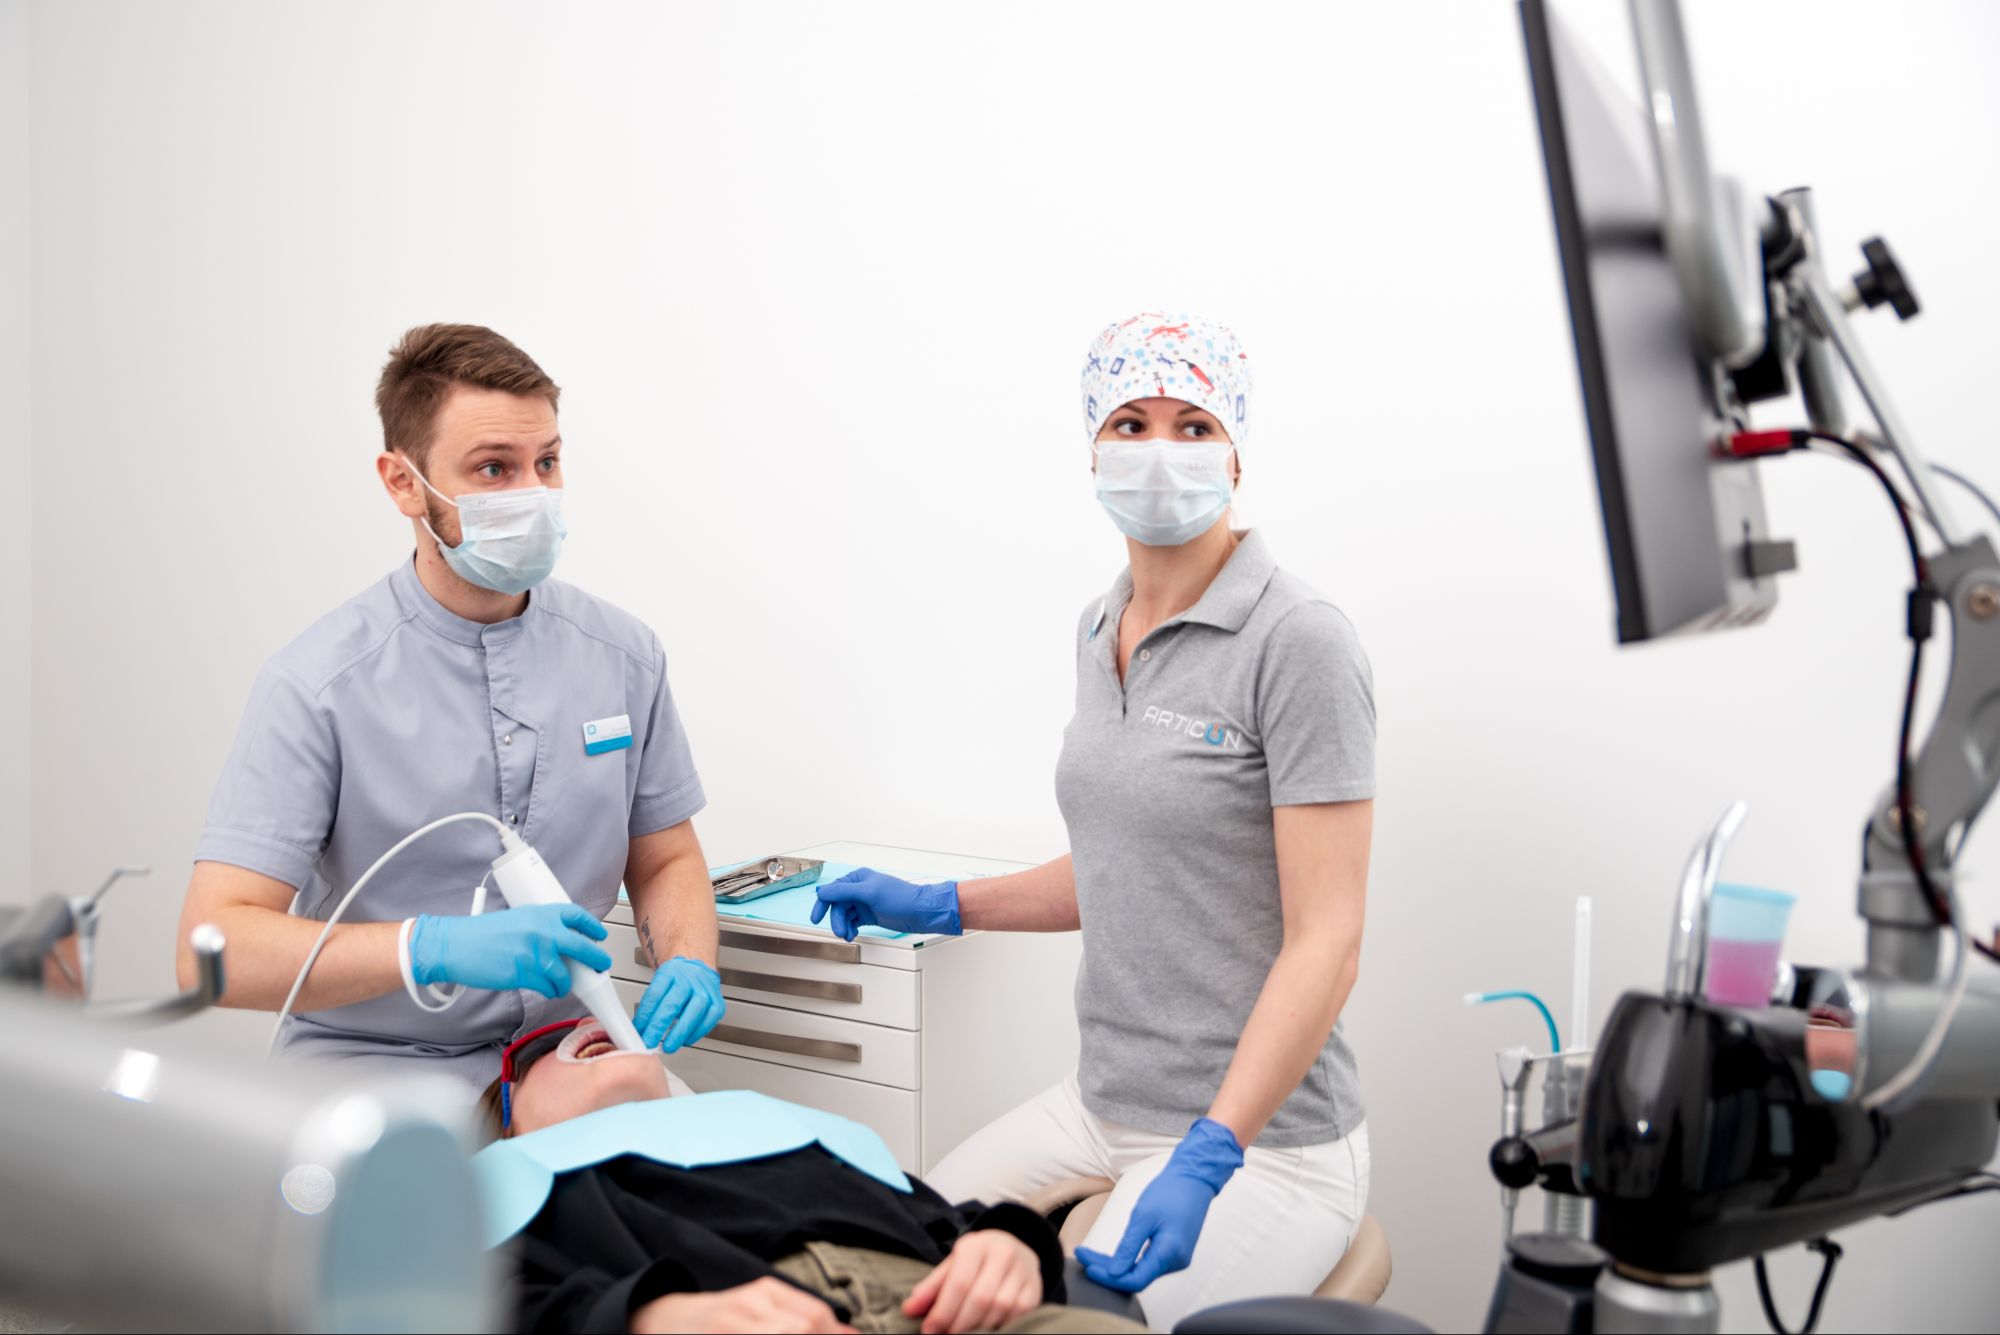 Интраоральное сканирование напоминает видеосъемку: врач водит аппаратом вдоль зубного ряда в произвольном порядке